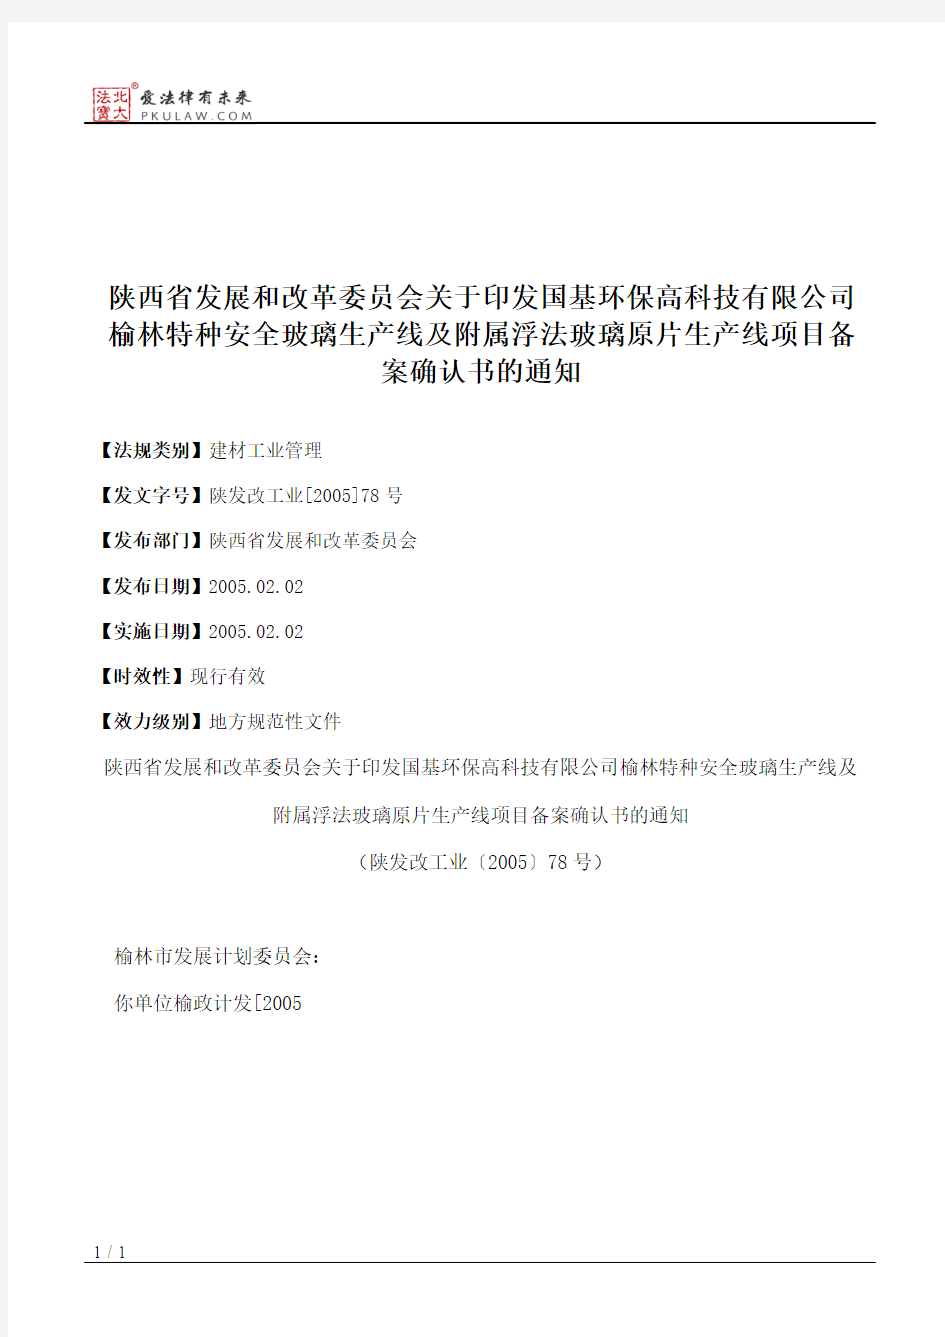 陕西省发展和改革委员会关于印发国基环保高科技有限公司榆林特种